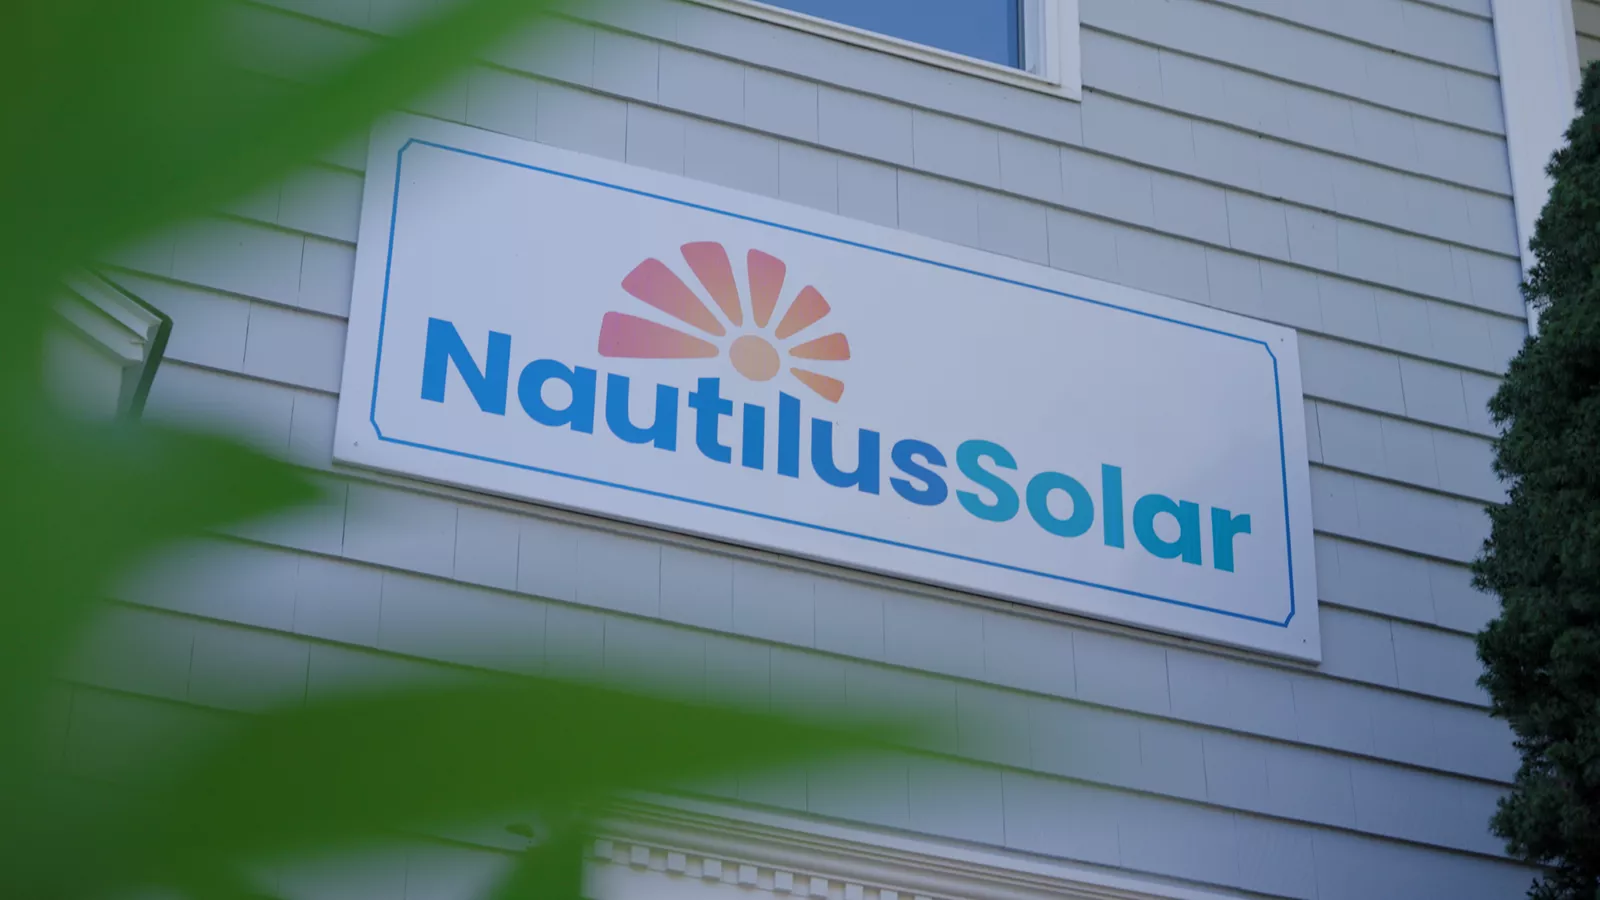 Nautilus Solar Energy building